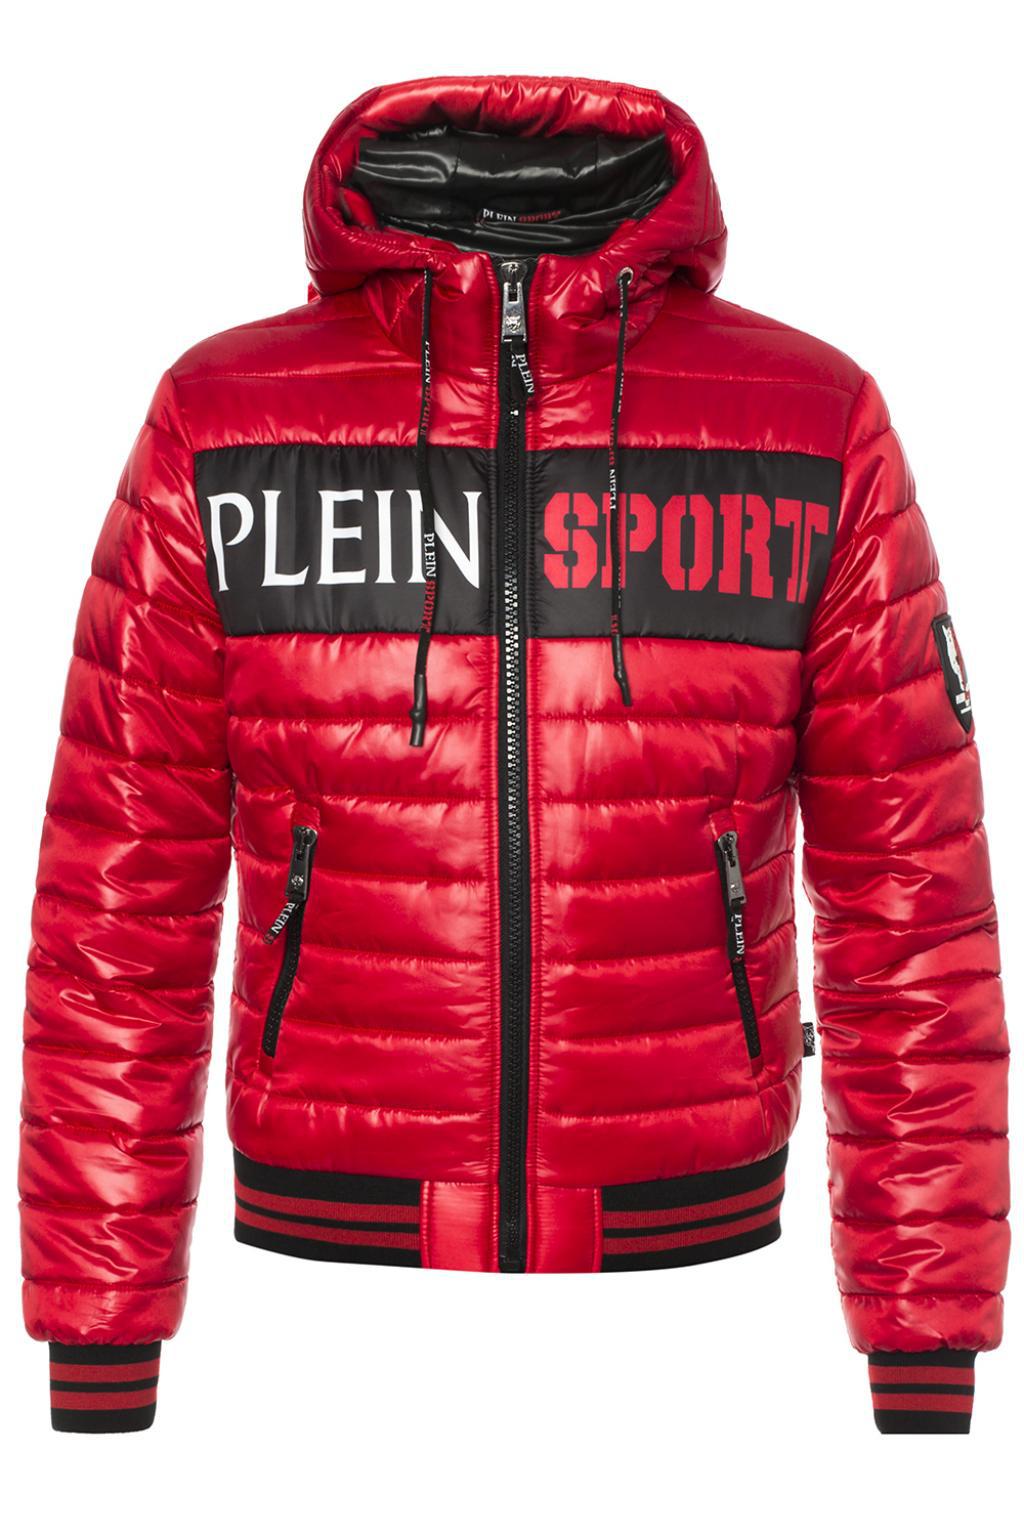 philipp plein sport jacket